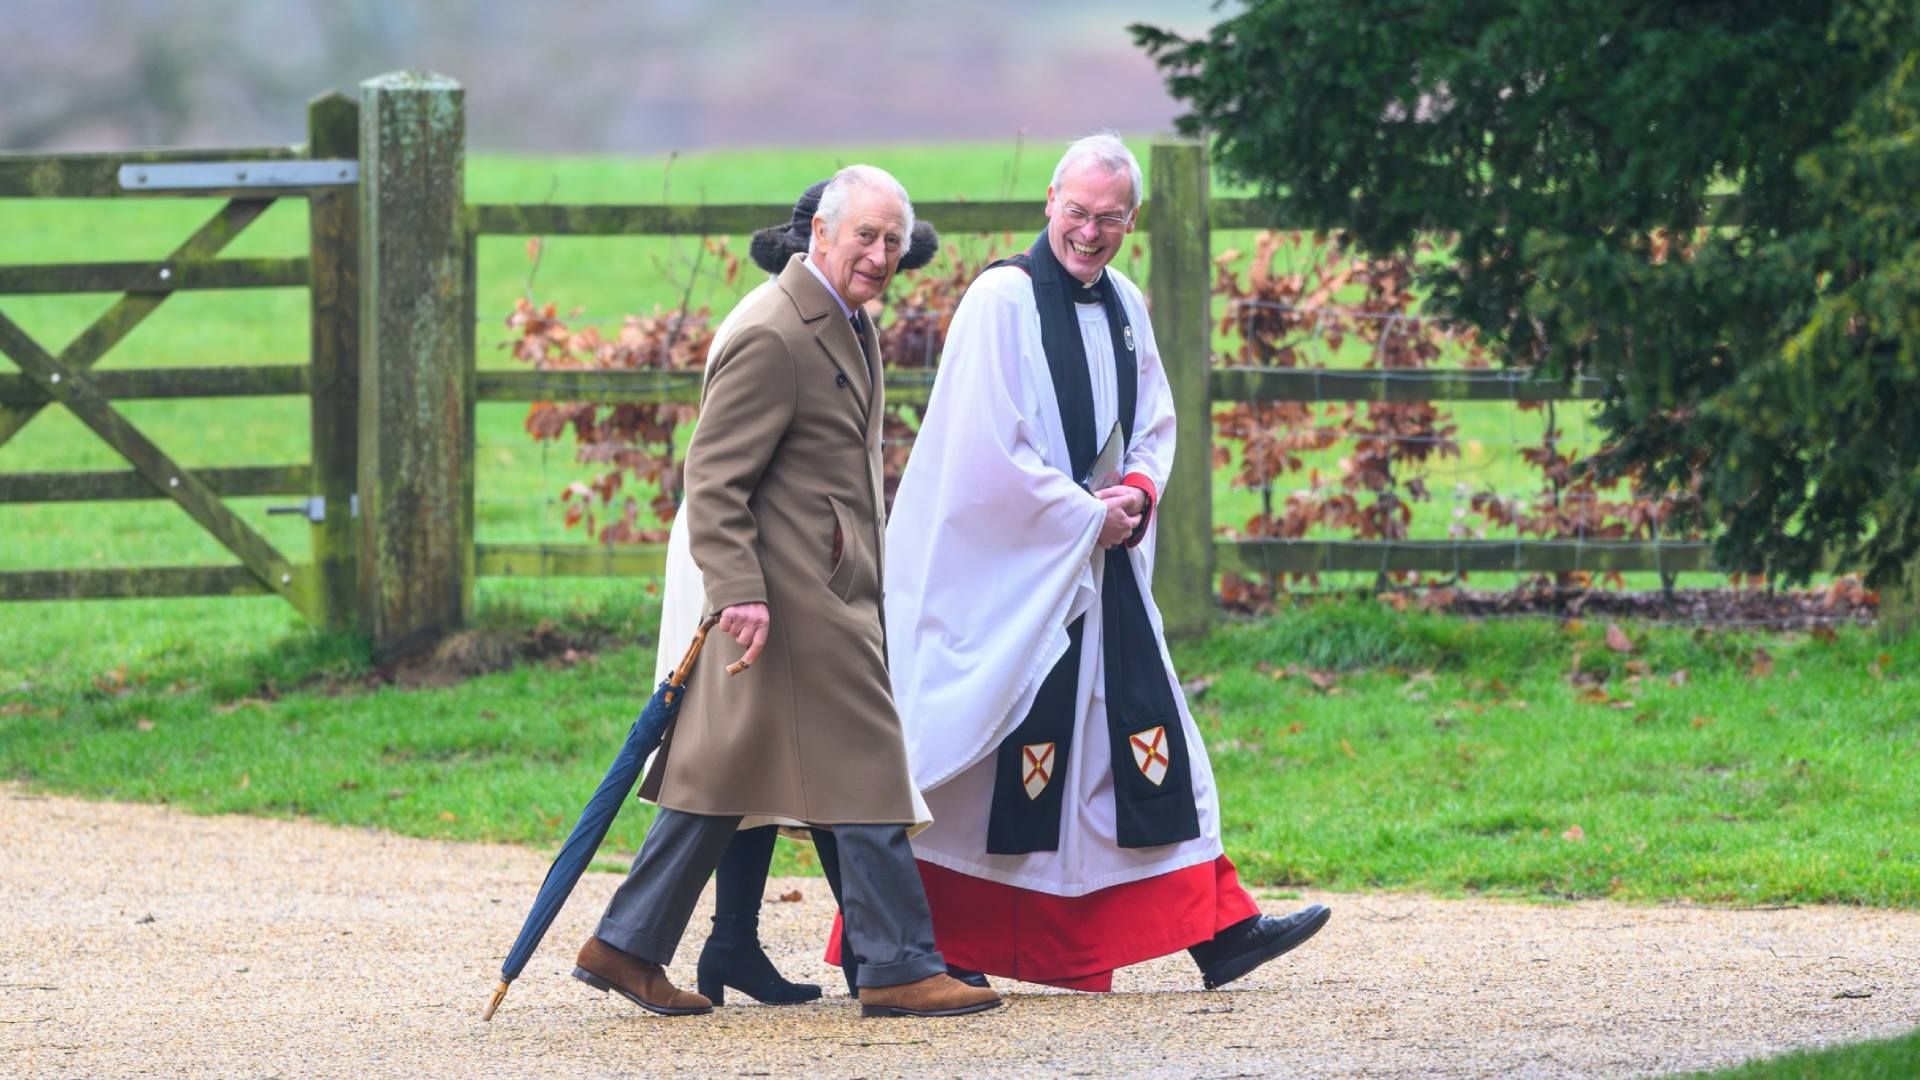 El Rey Carlos III Asiste a Misa del Domingo en Sandringham, Tras Anuncio de Cáncer